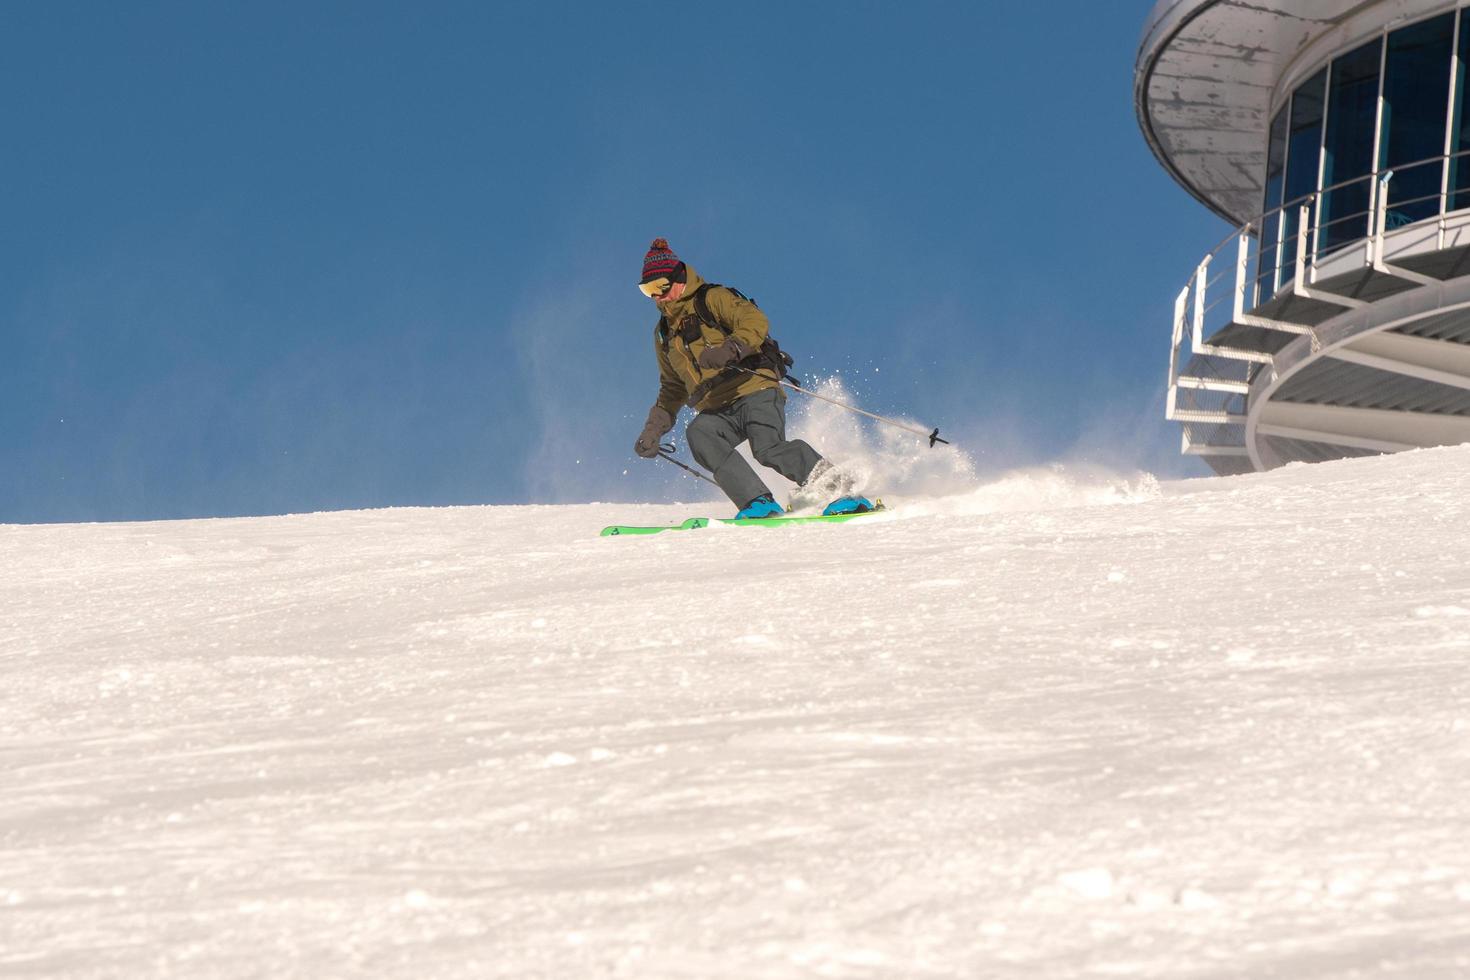 grandvalira, andorra, gen 03, 2021 - giovane uomo che scia nei pirenei presso la stazione sciistica di grandvalira foto